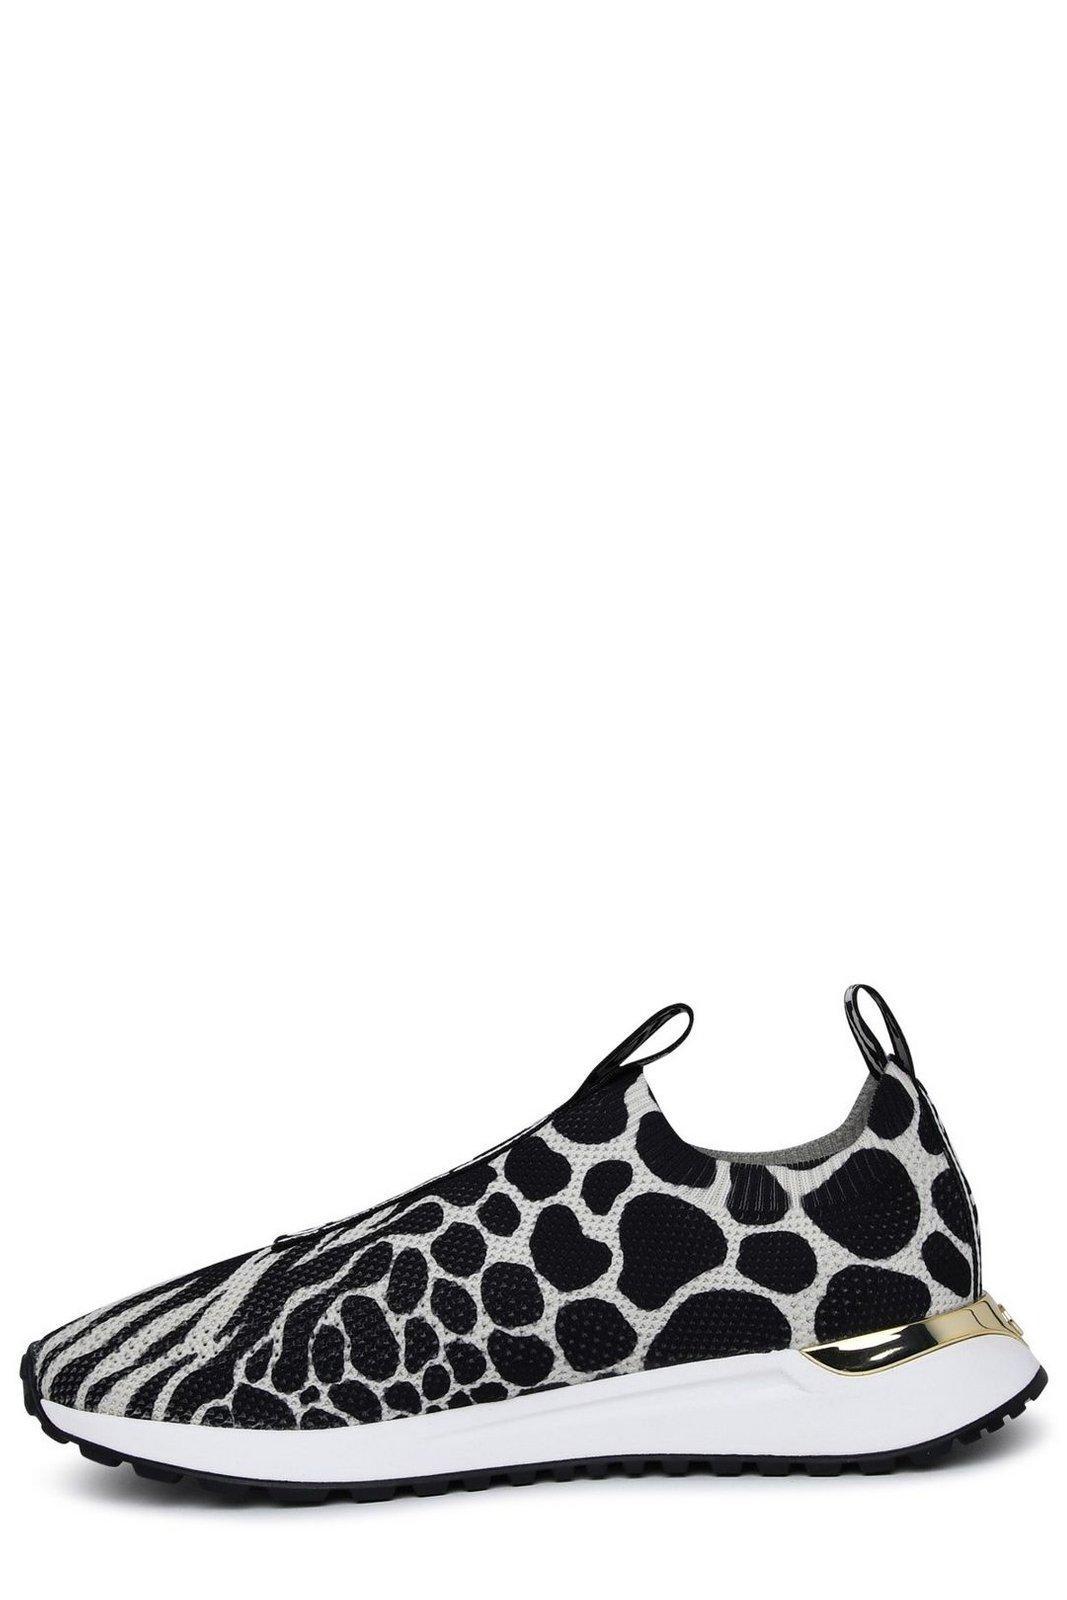 MICHAEL Michael Kors Leopard Printed Slip-on Sneakers in Black | Lyst